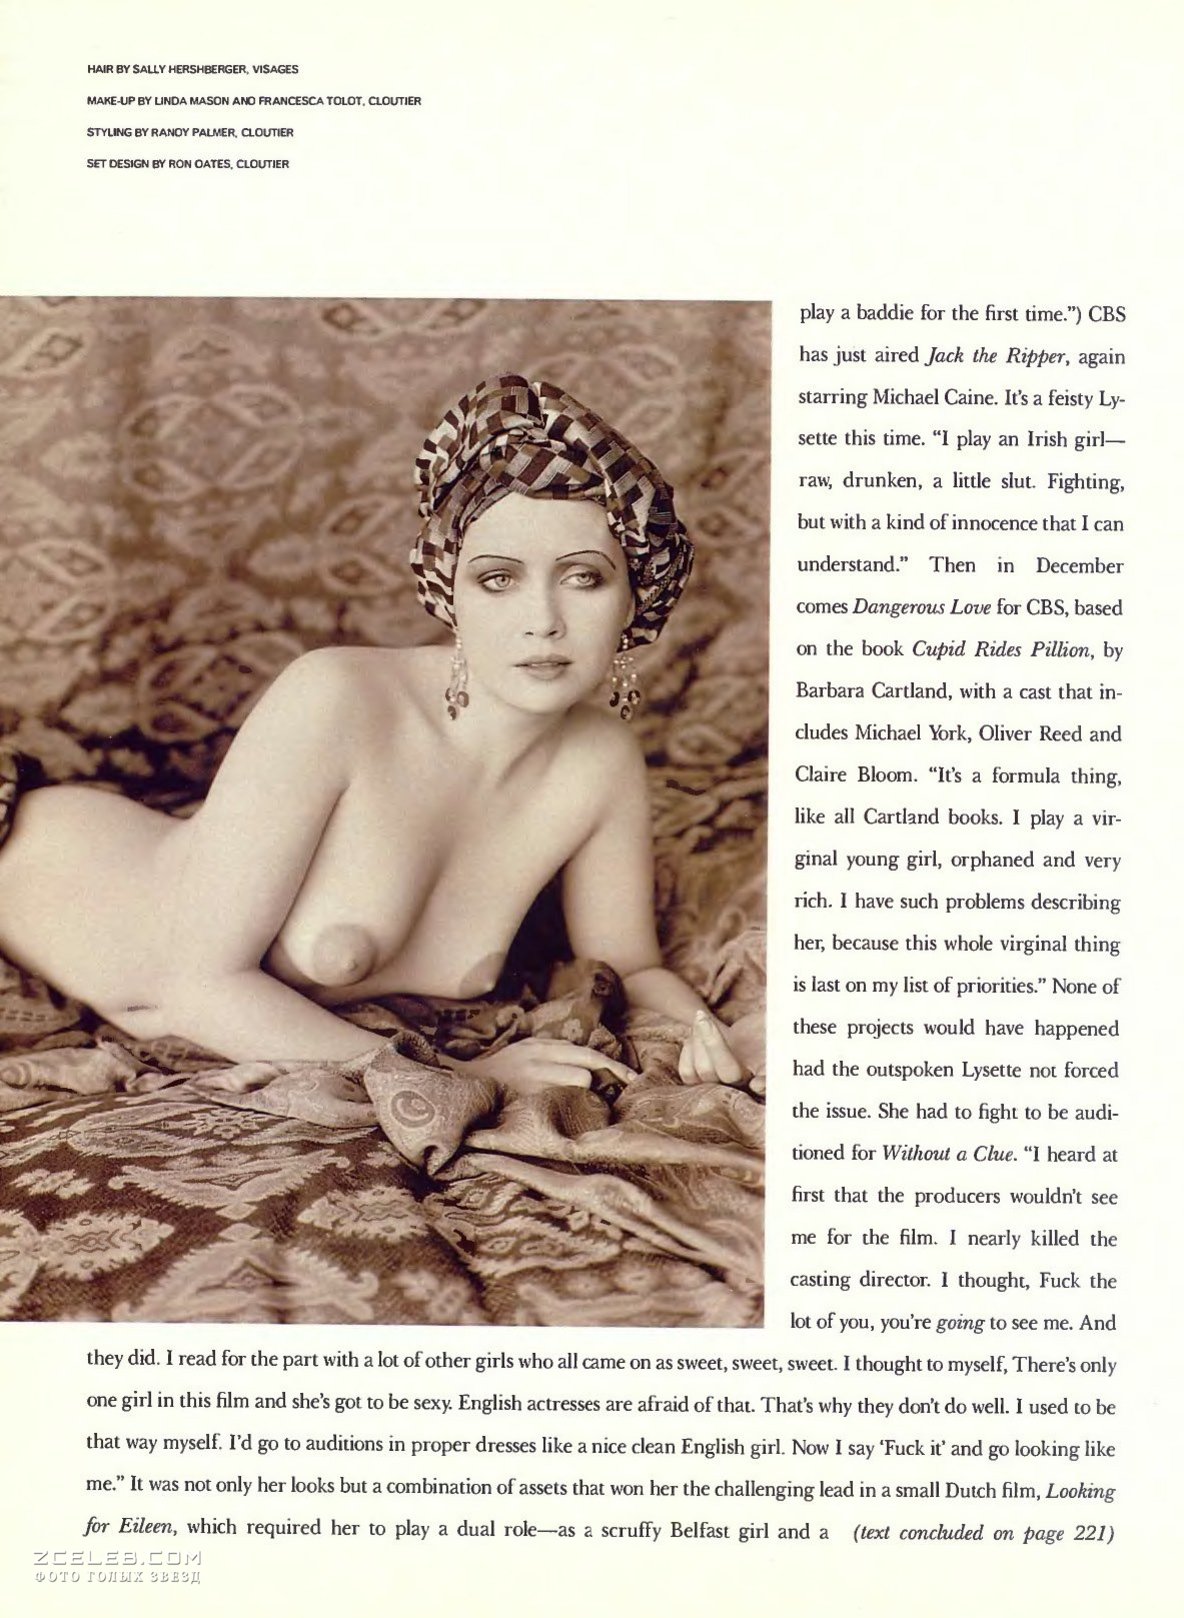 Обнаженная Лизетт Энтони в журнале Playboy, Декабрь 1988.